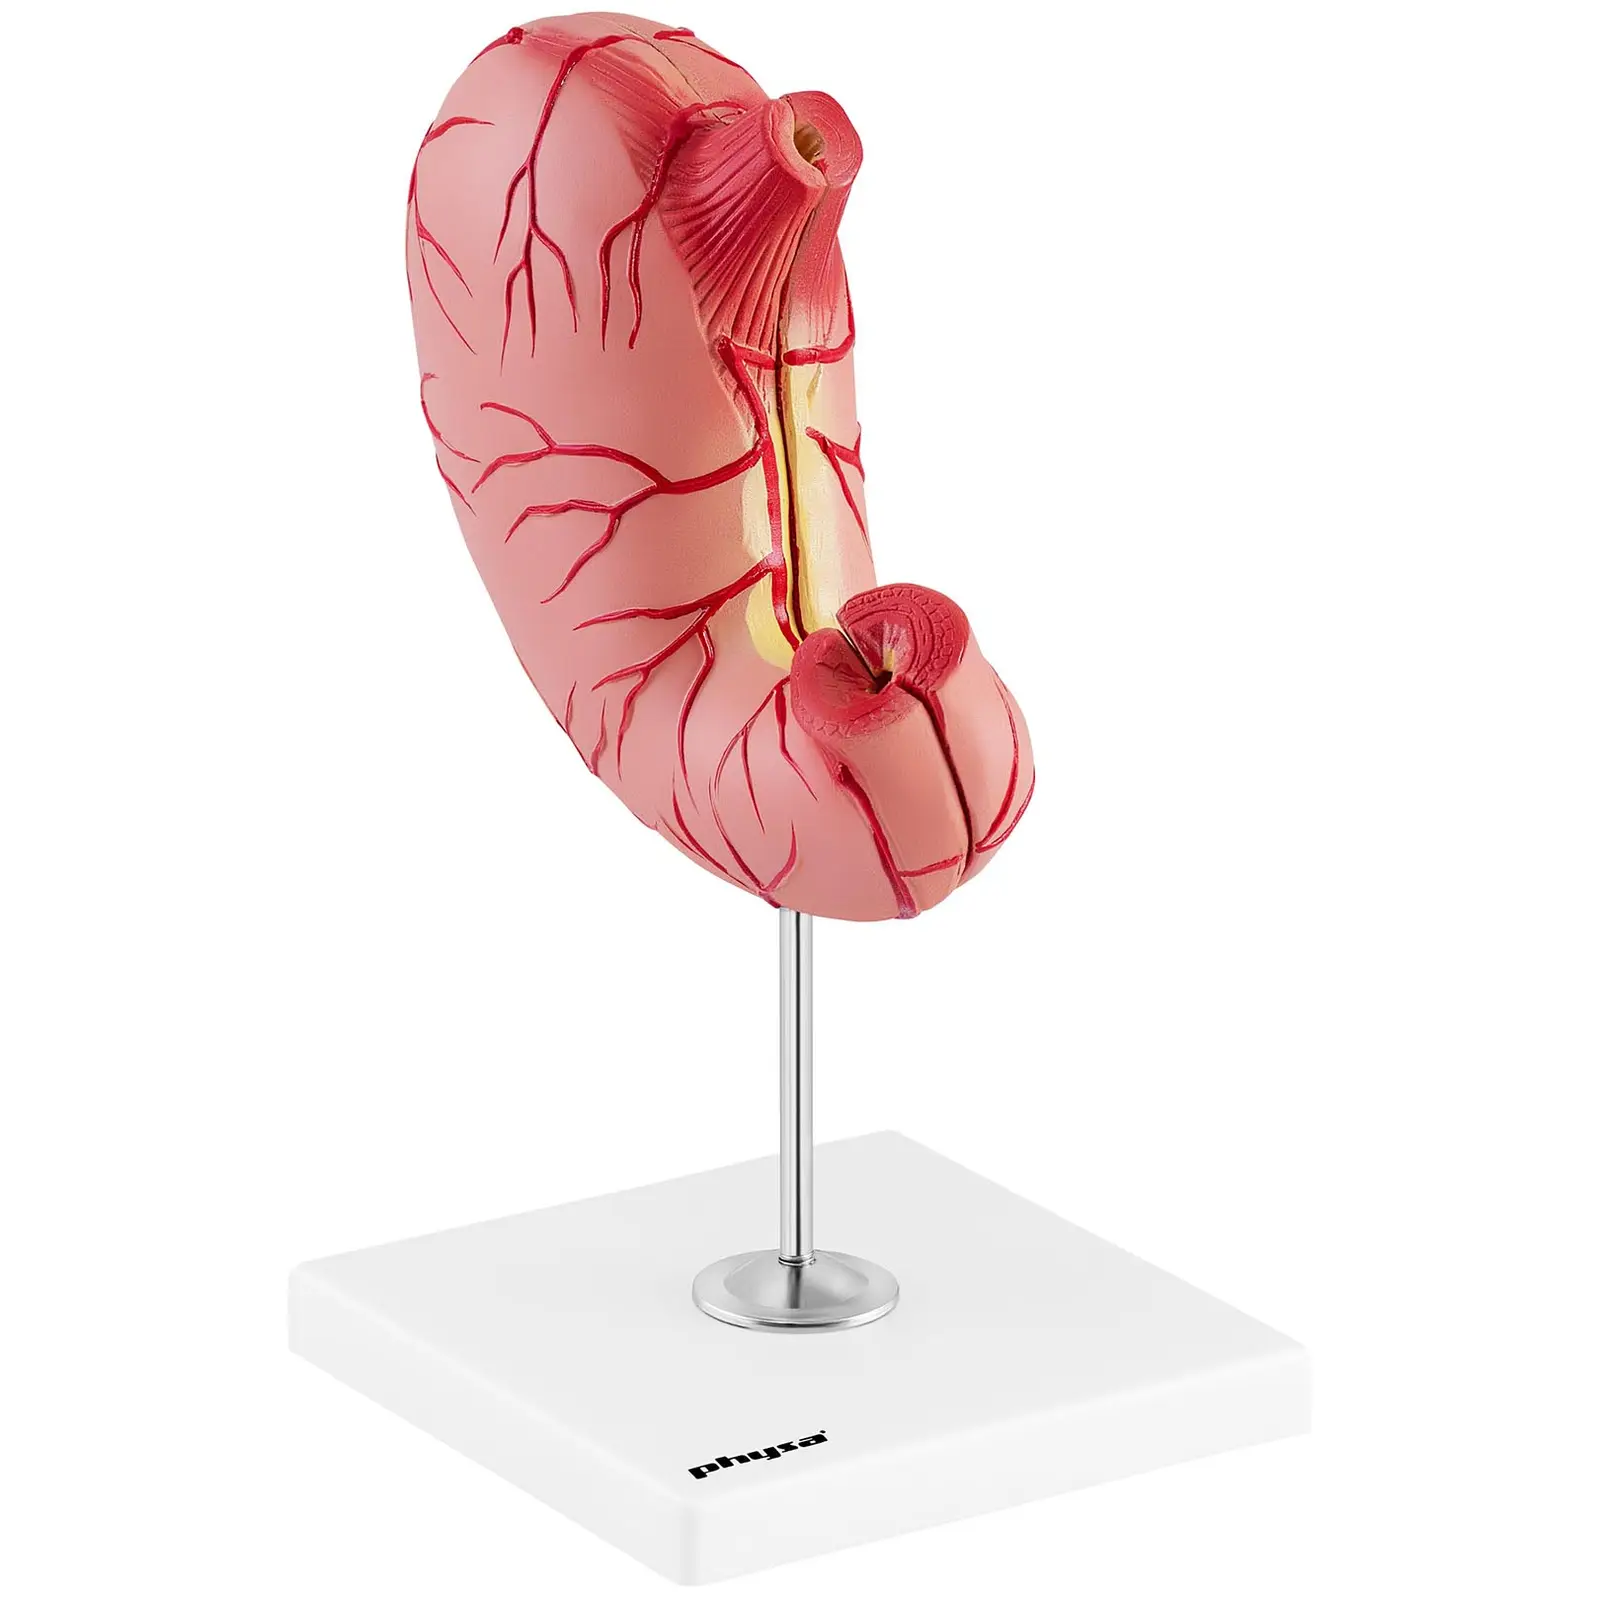 Modello anatomico stomaco - Divisibile in 2 parti - A grandezza naturale